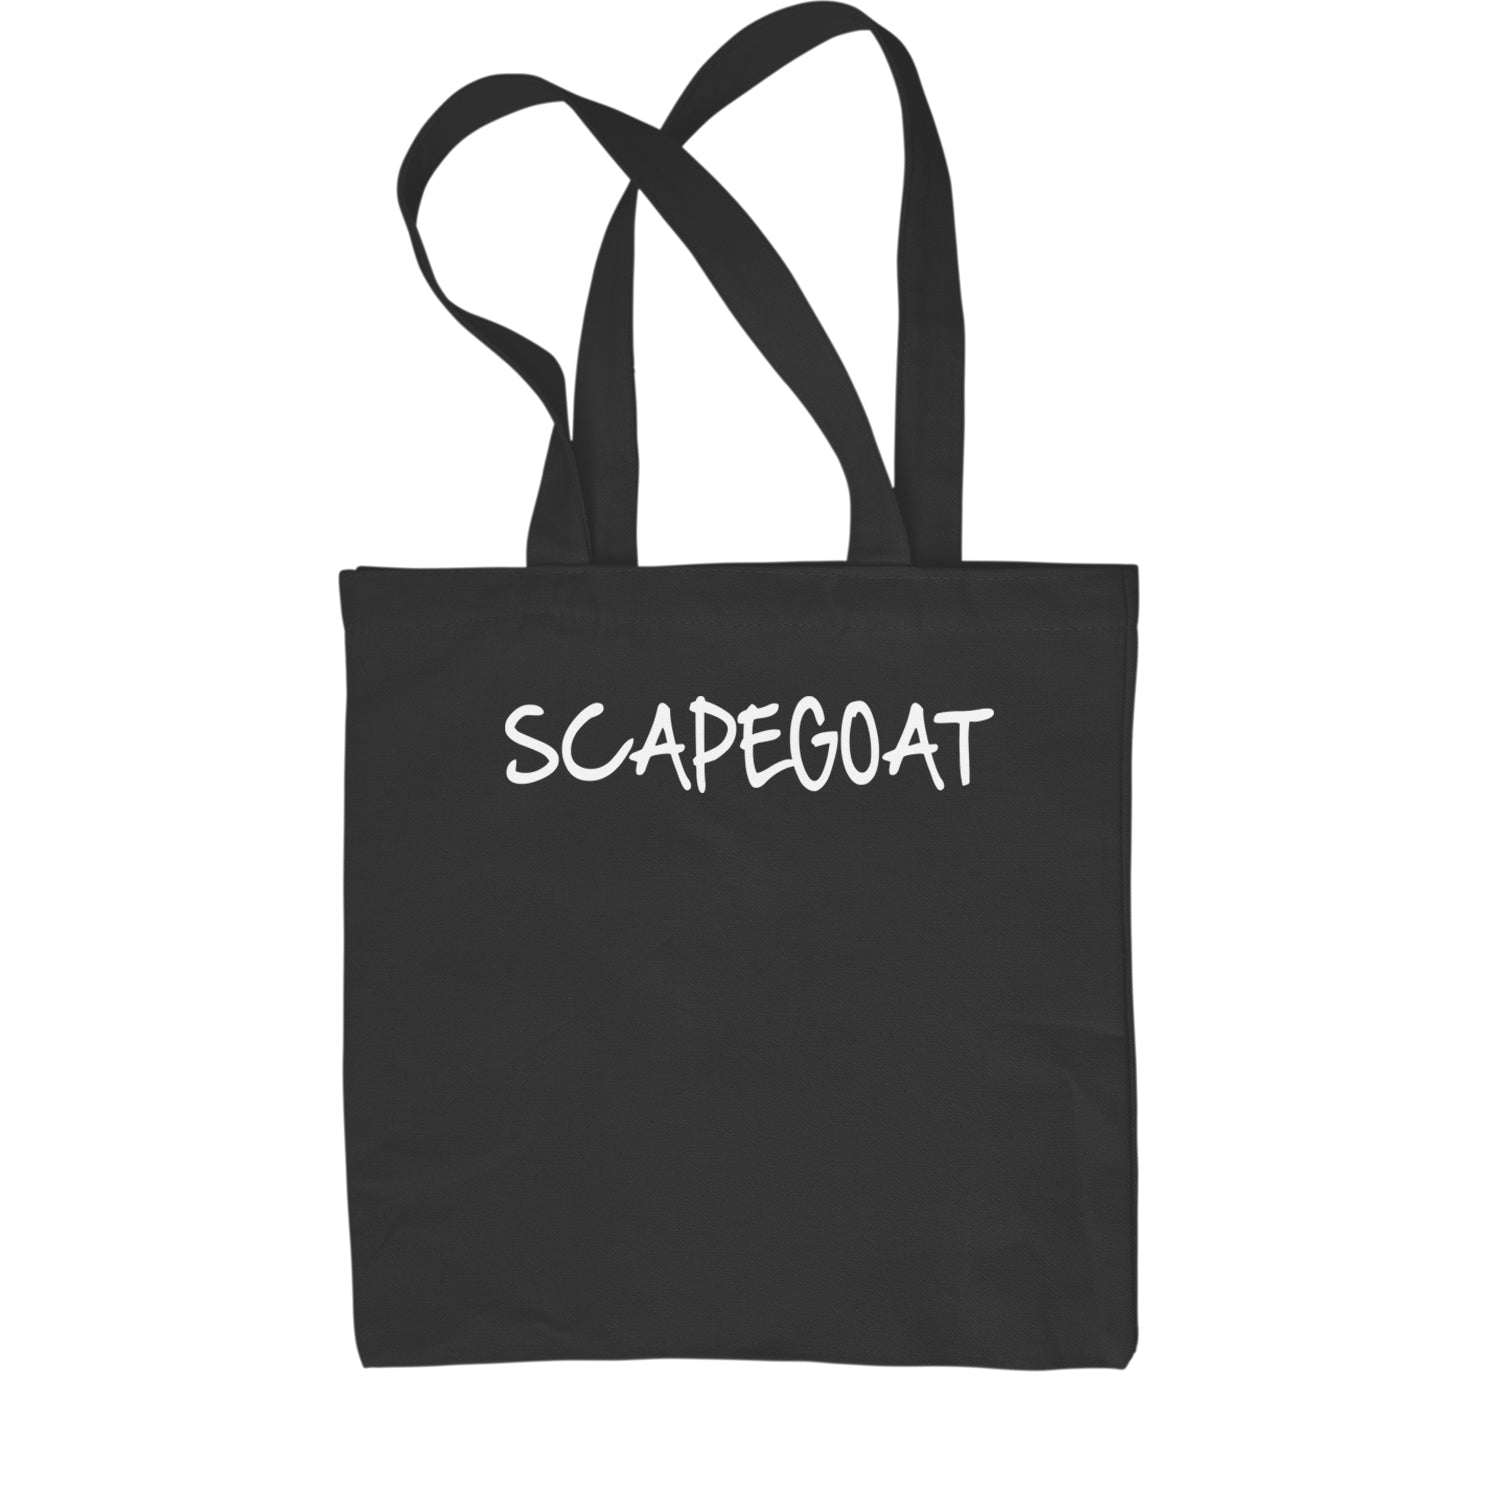 Scapegoat Wrestling Shopping Tote Bag